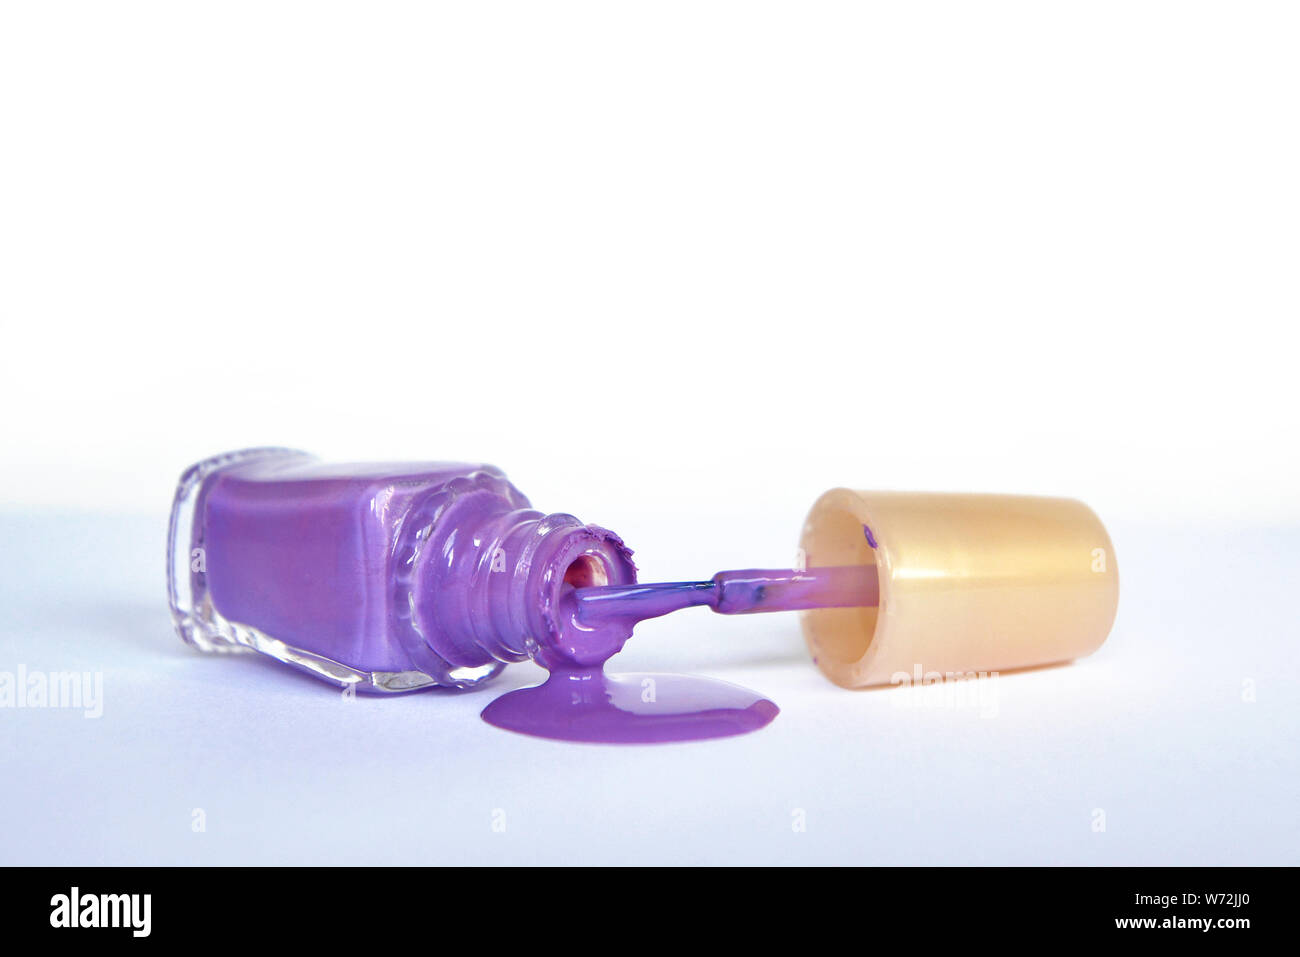 Öffnen lila Nagellack Flasche liegen auf der Seite mit dem verschütteten  Nagellack Gießen auf weißem Hintergrund Stockfotografie - Alamy